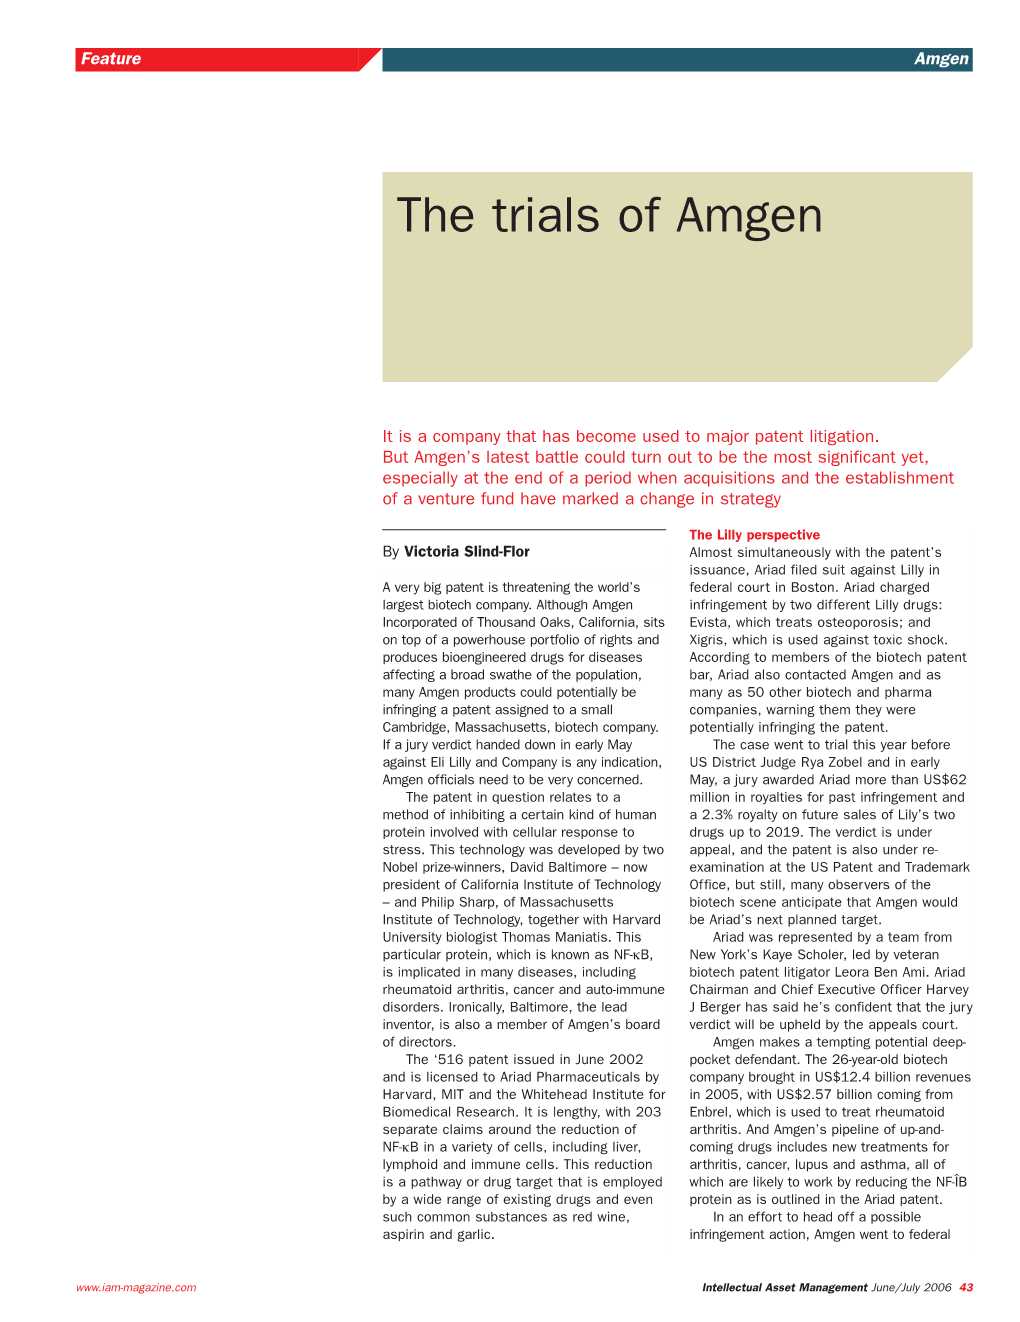 The Trials of Amgen